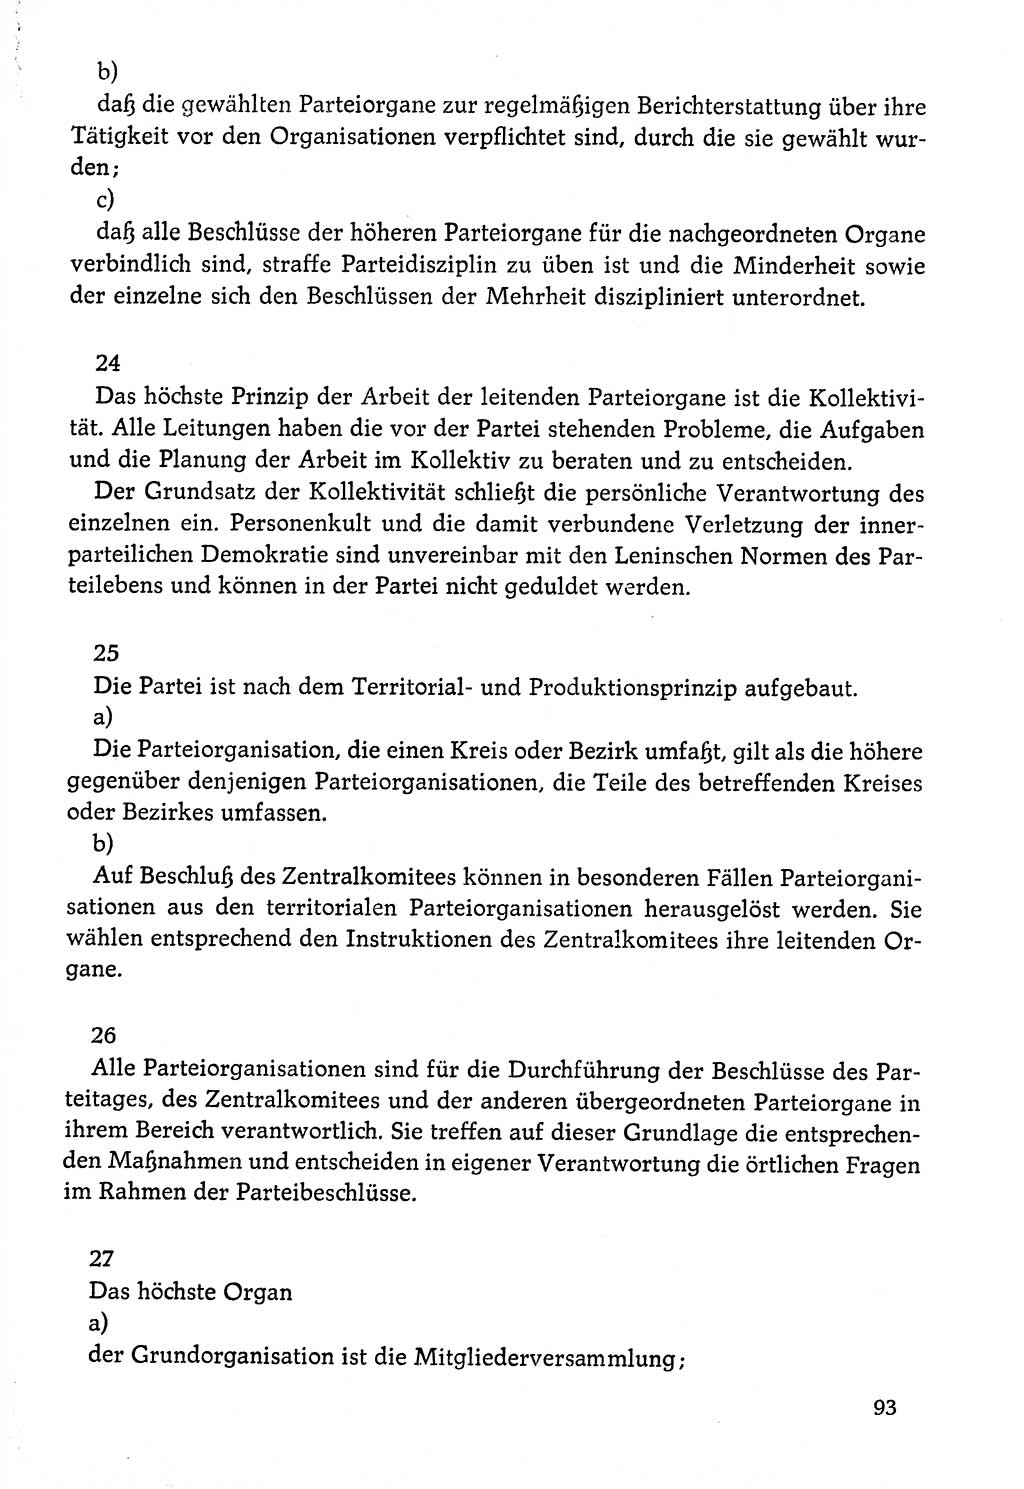 Dokumente der Sozialistischen Einheitspartei Deutschlands (SED) [Deutsche Demokratische Republik (DDR)] 1976-1977, Seite 93 (Dok. SED DDR 1976-1977, S. 93)